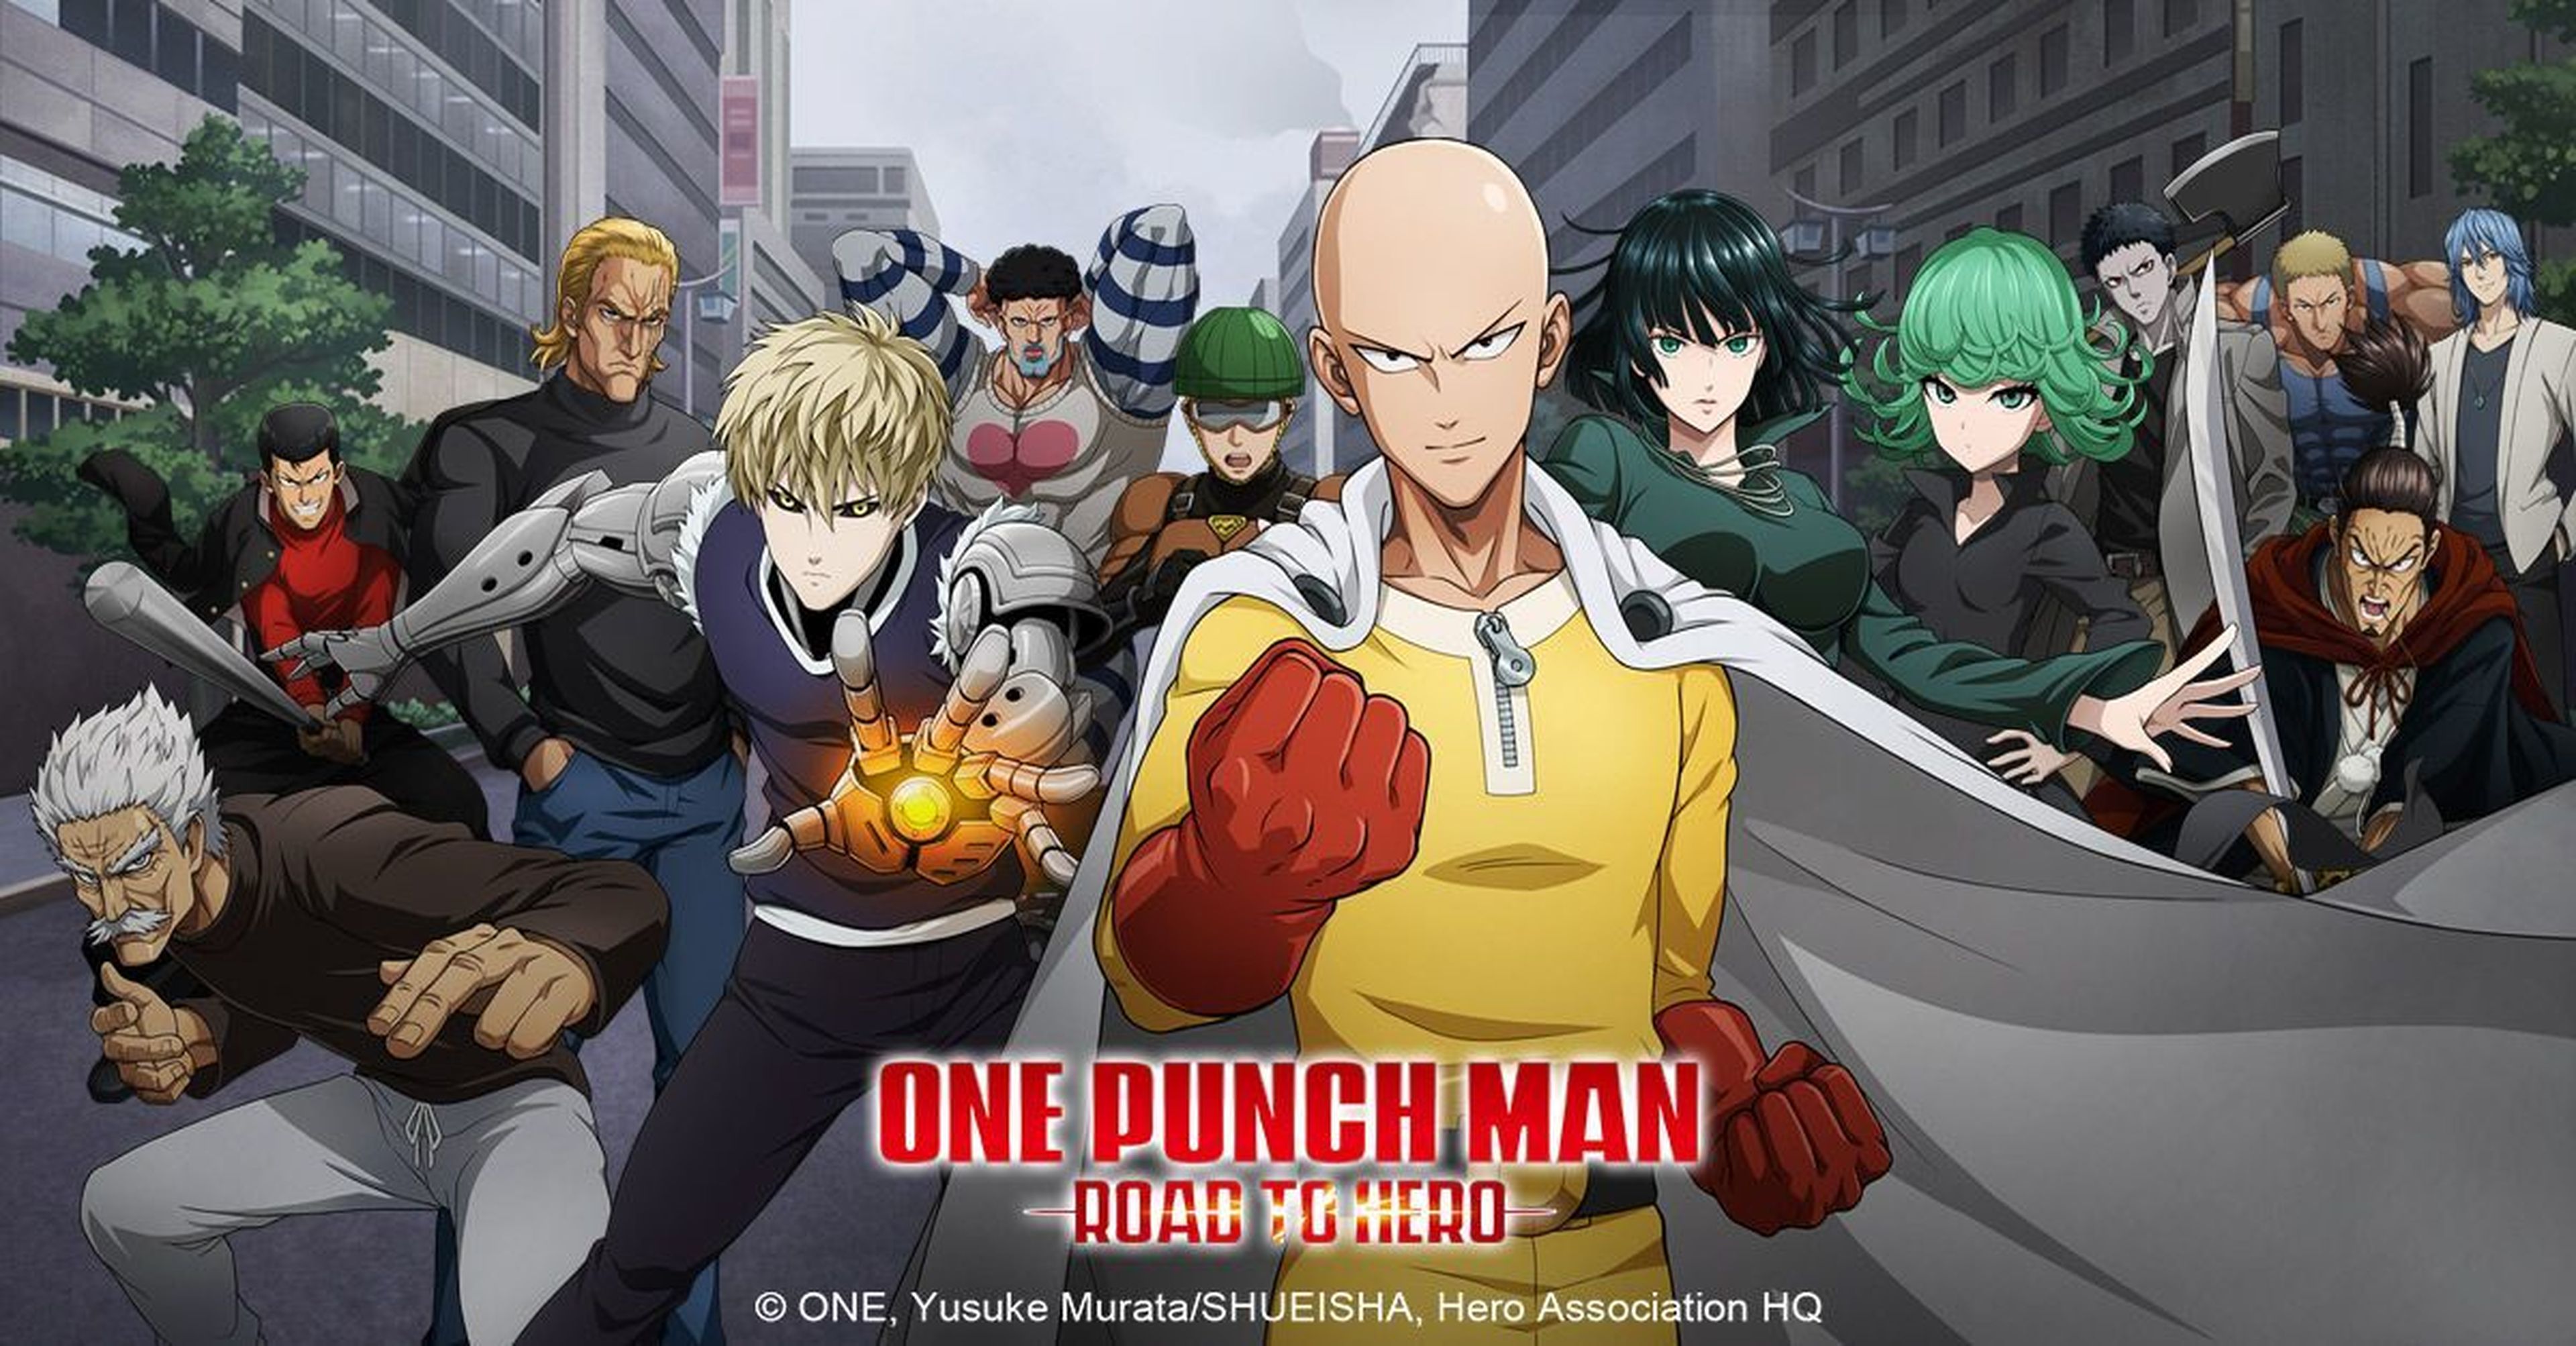 Anunciado el videojuego de One-Punch Man para móviles